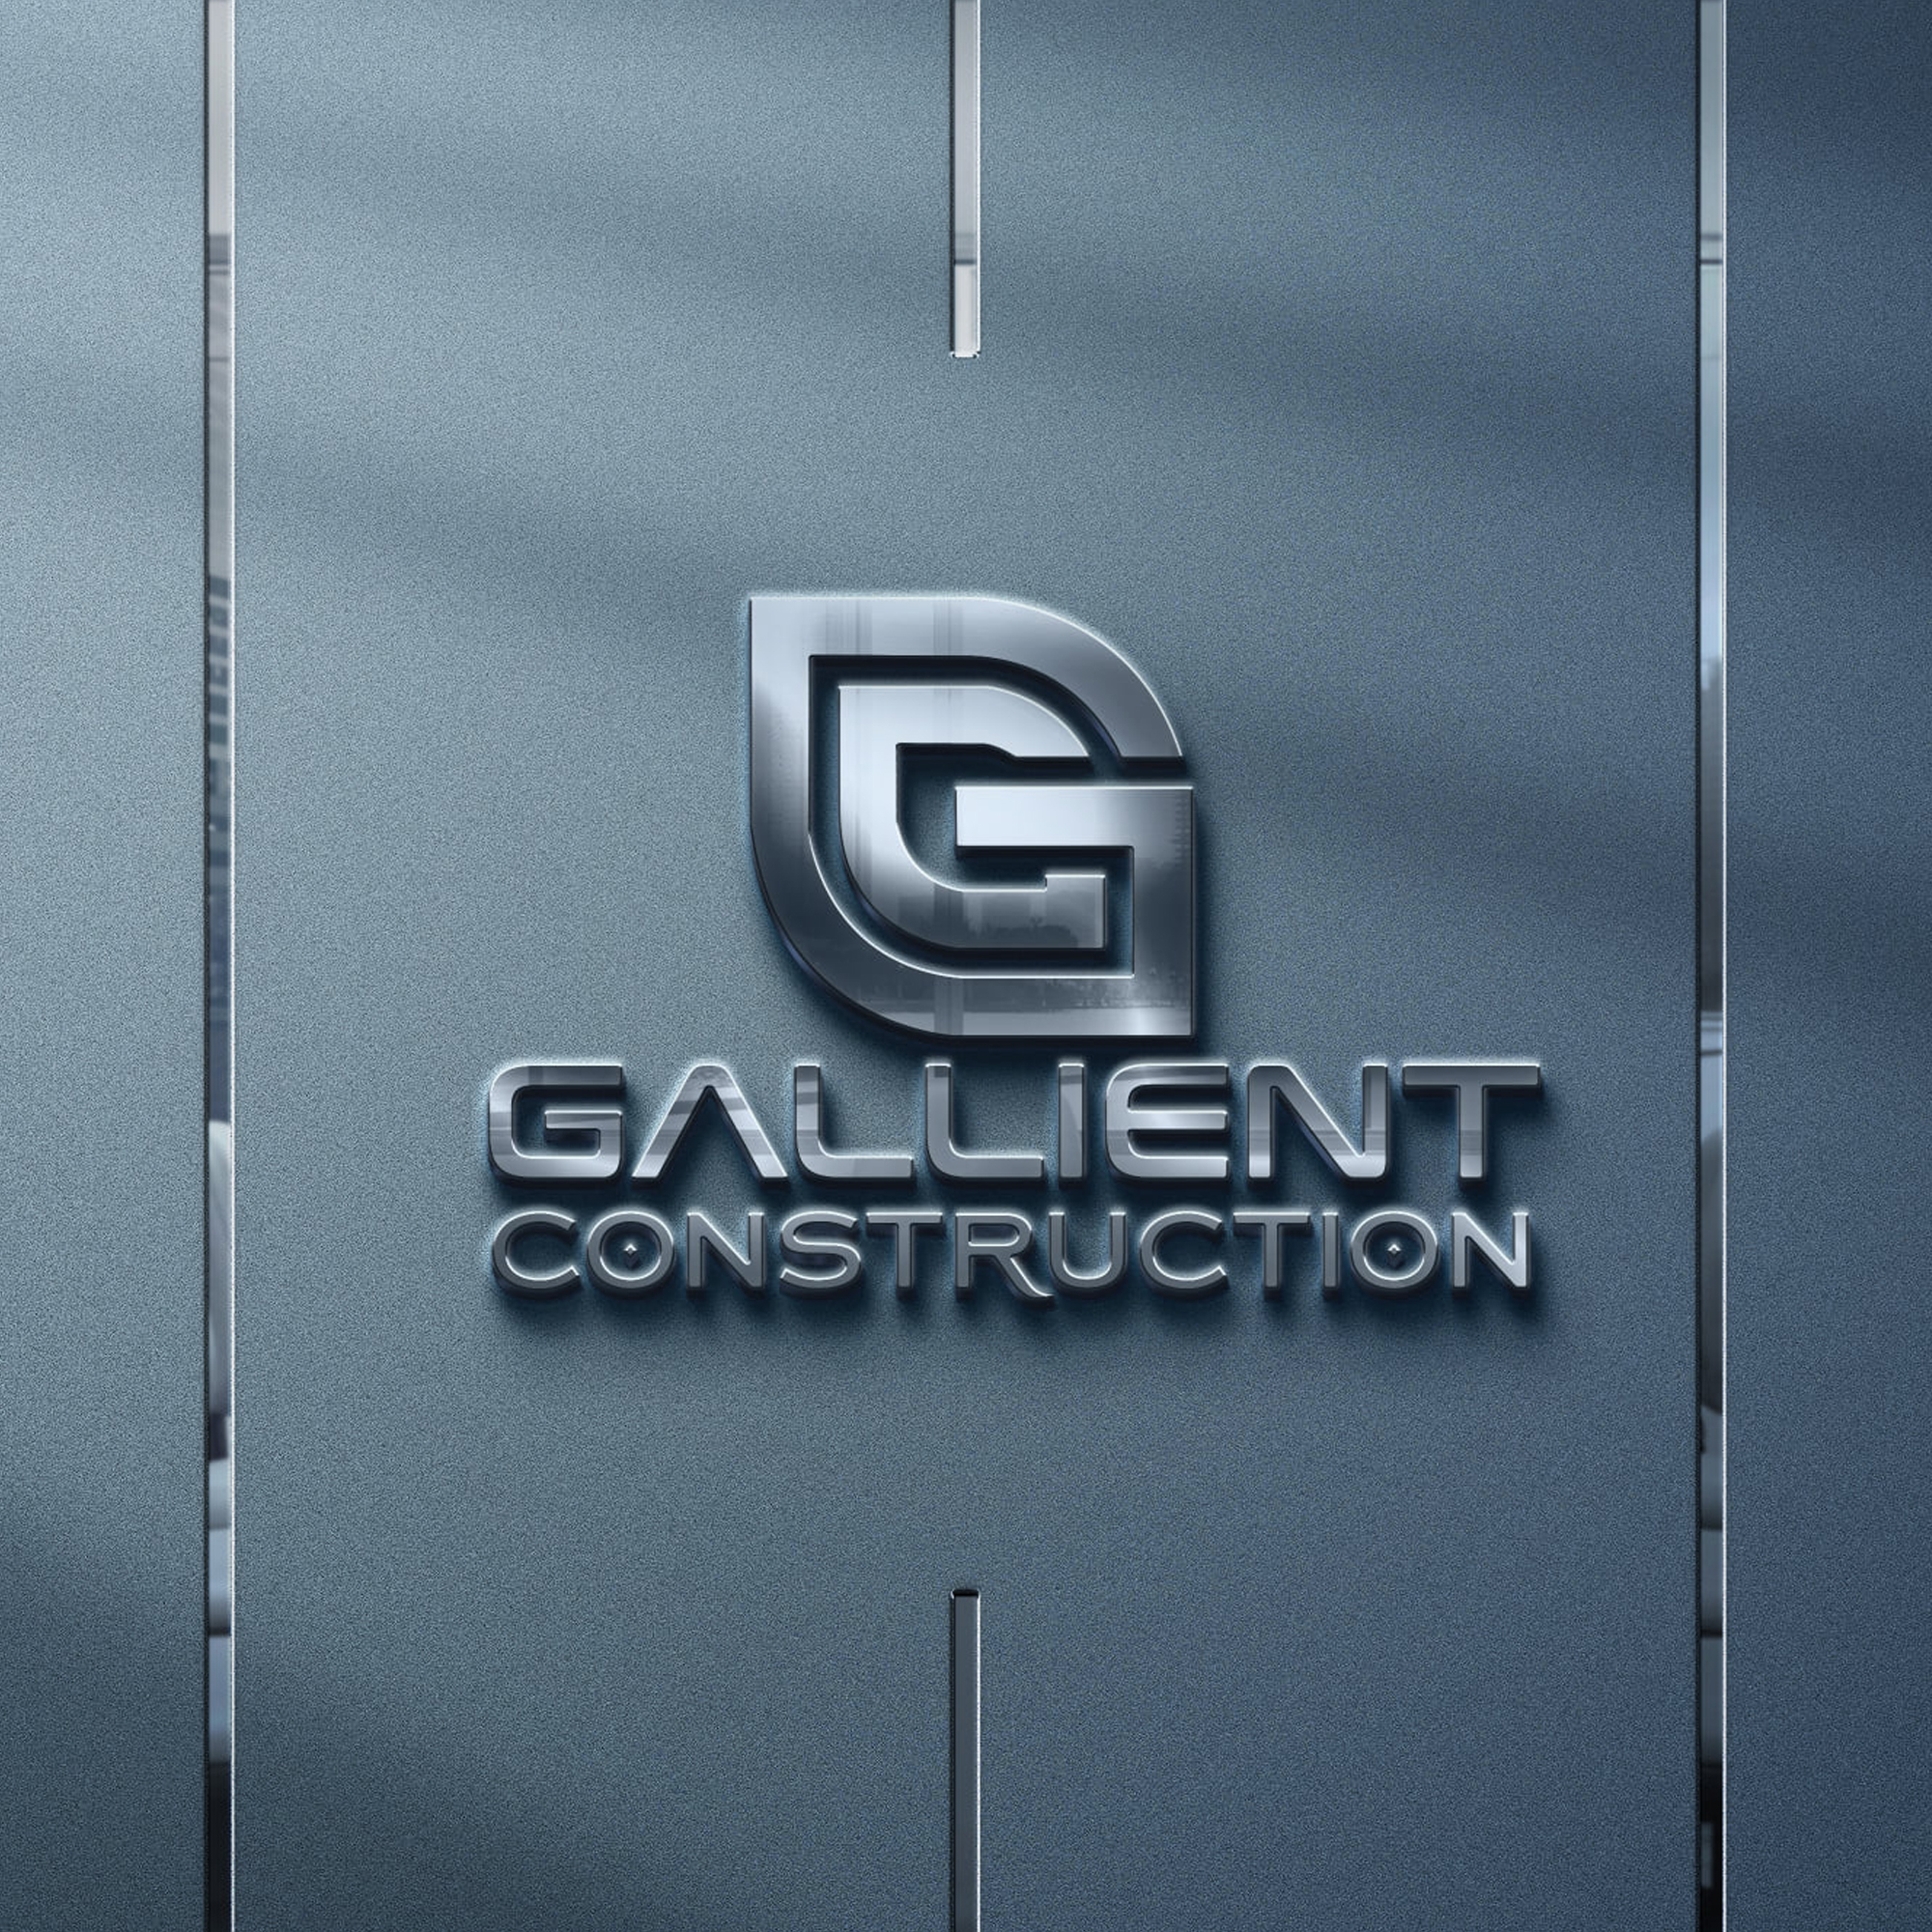 creative construction logo